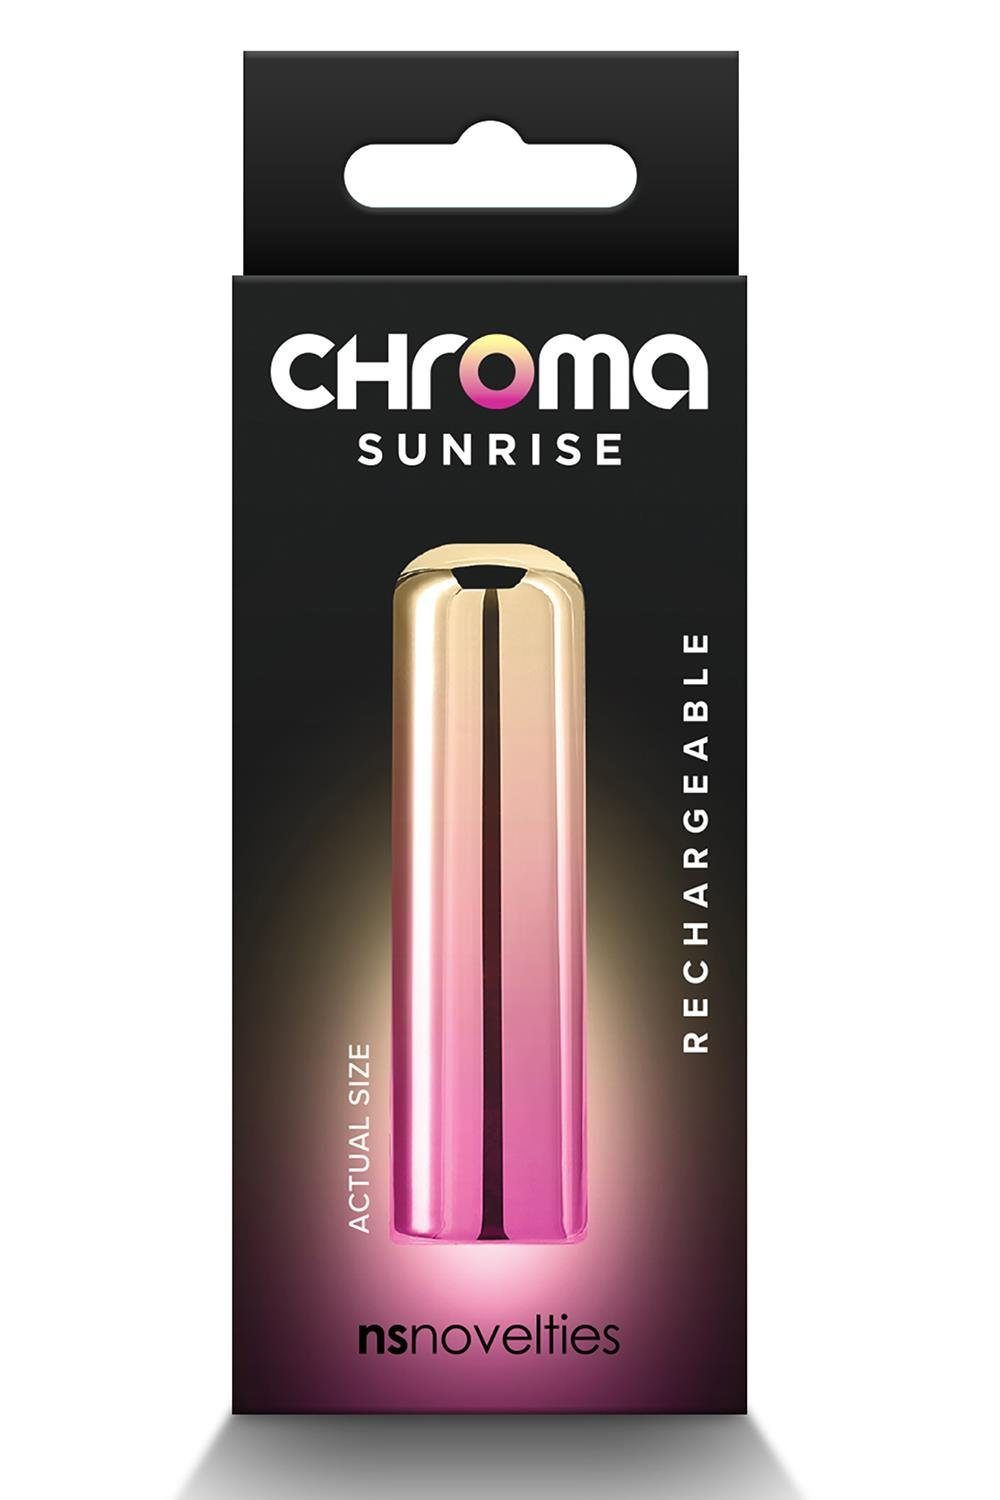 Small Mini-Vibrator Chroma NS Novelties Sunrise